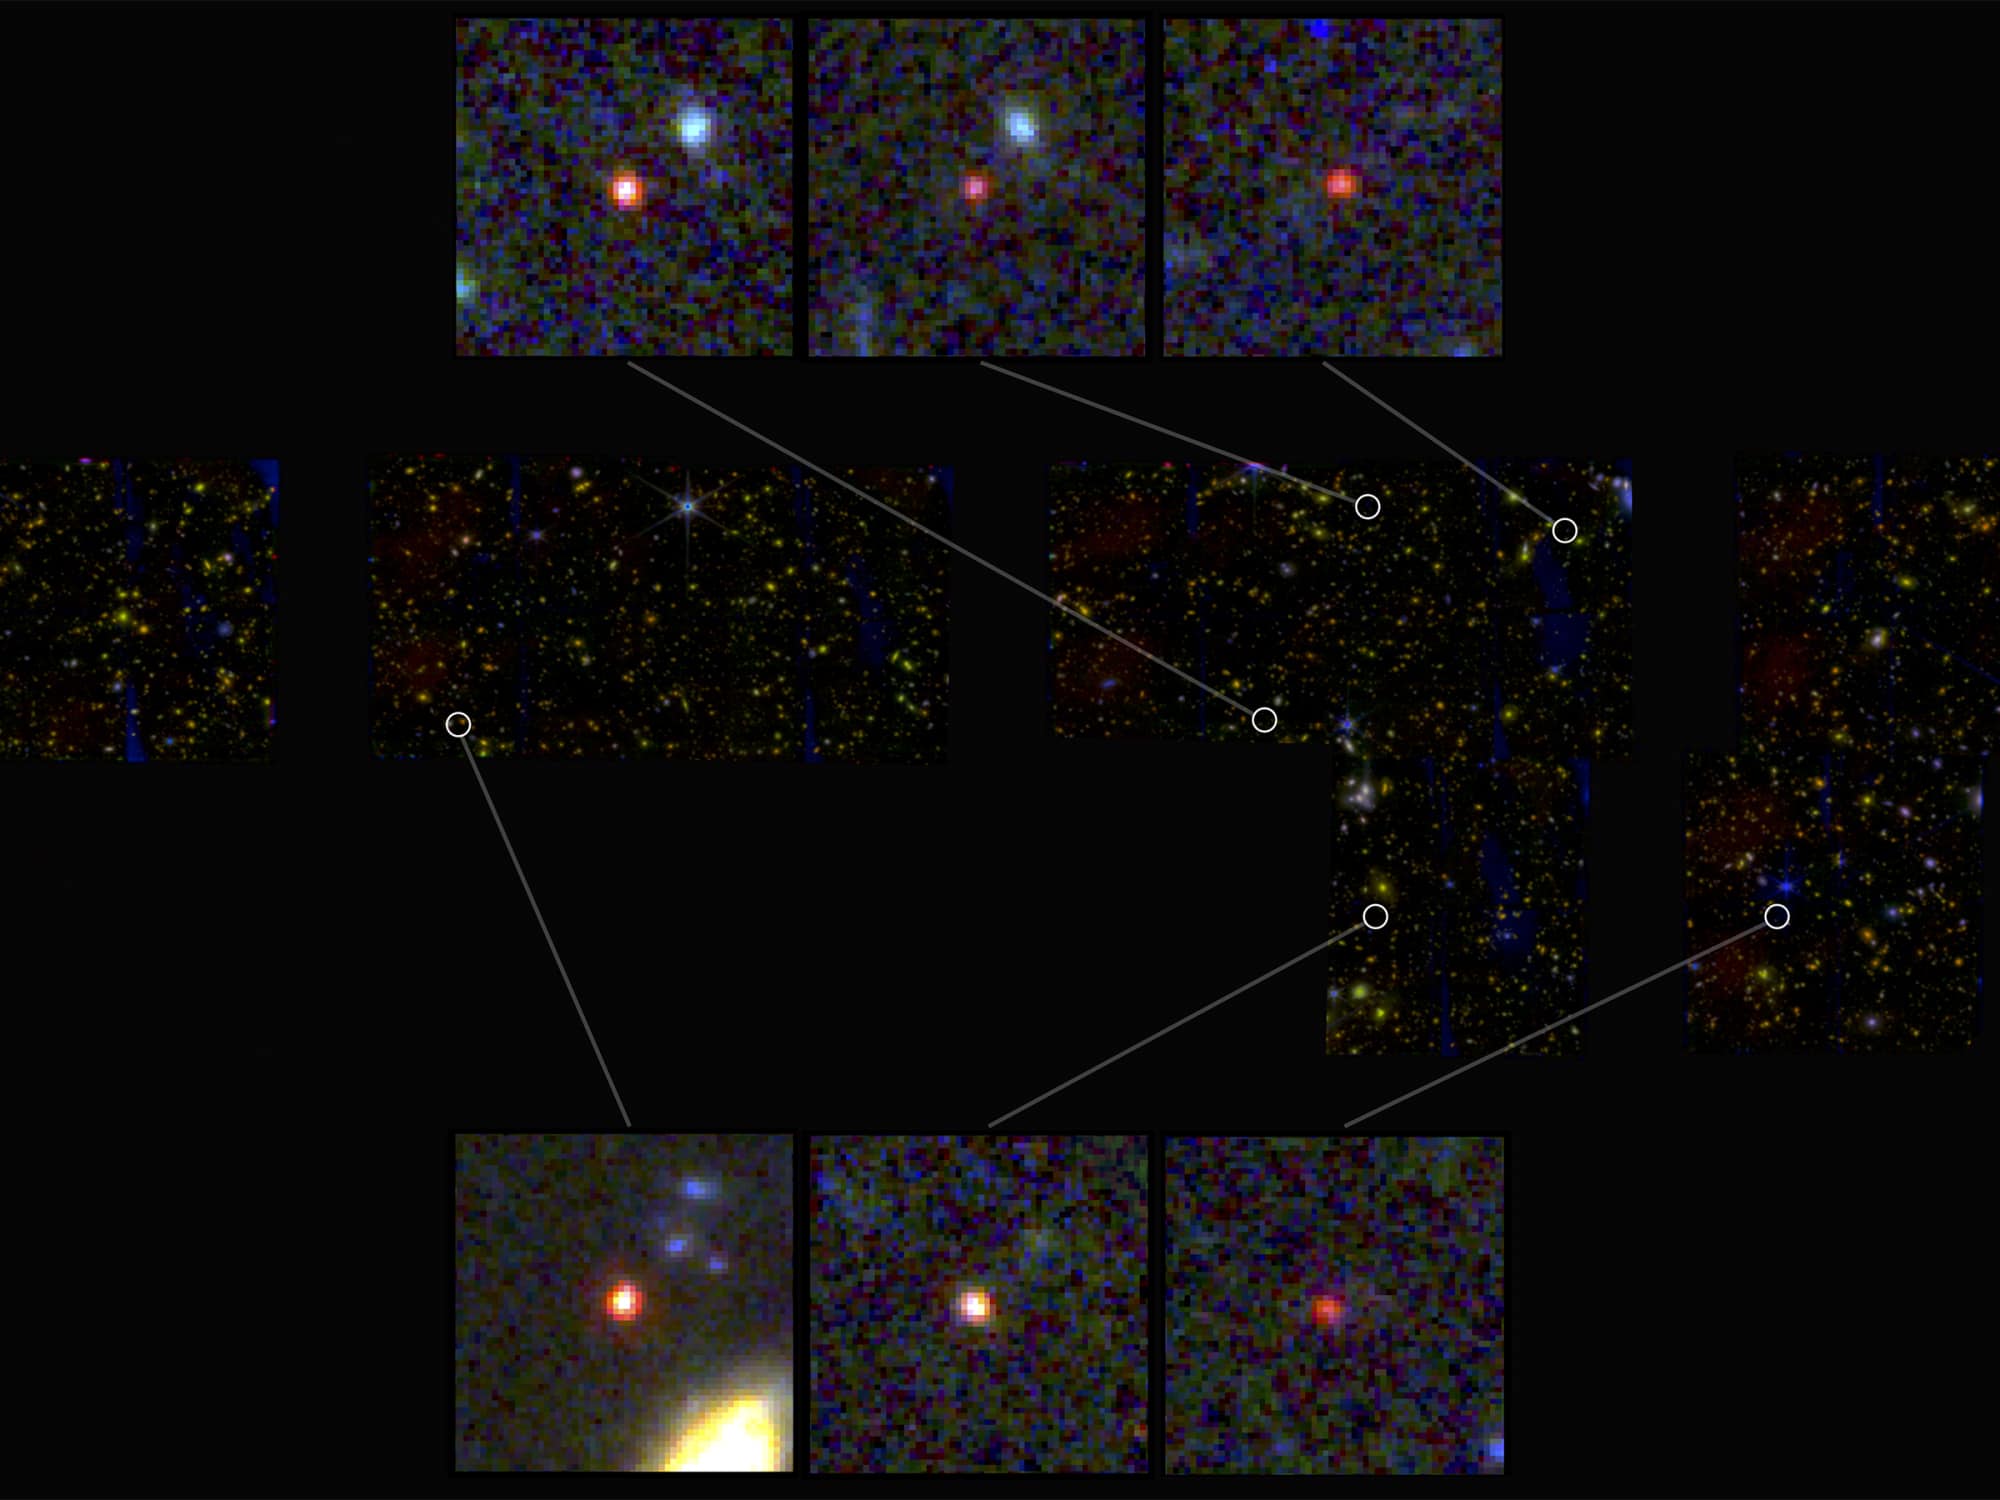 Wczesne odkrycie sześciu masywnych galaktyk stanowi wyzwanie dla wcześniejszego zrozumienia wszechświata